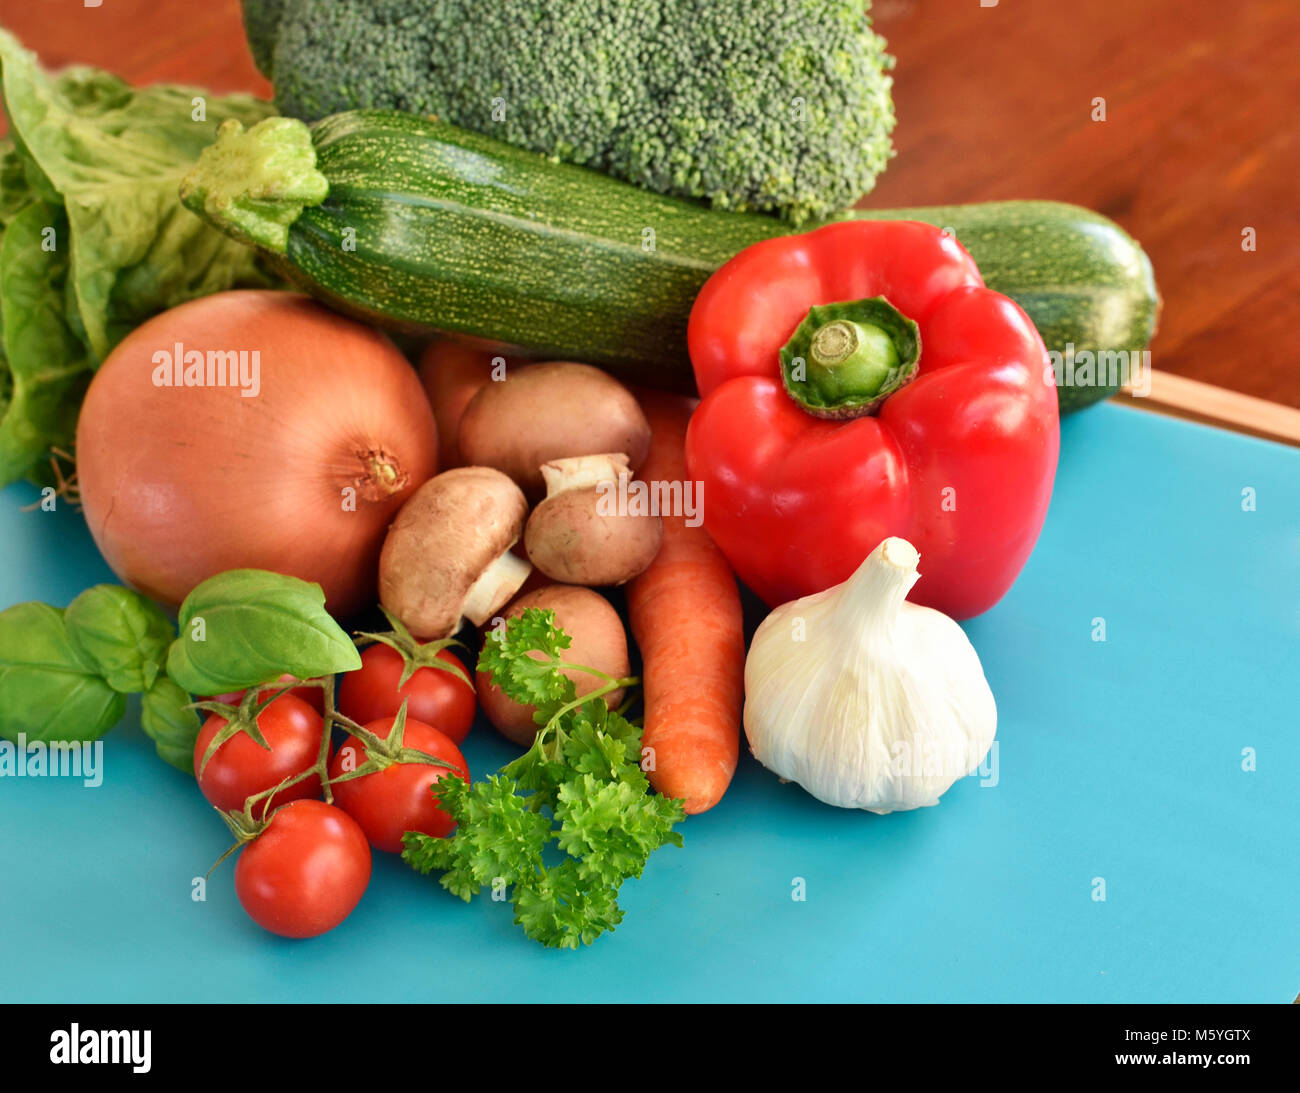 Fresche verdure crude su un tagliere. disposizione di peperone rosso, zucchine, broccoli, insalata, cipolla, carote e aglio, decorate in bambù. Foto Stock